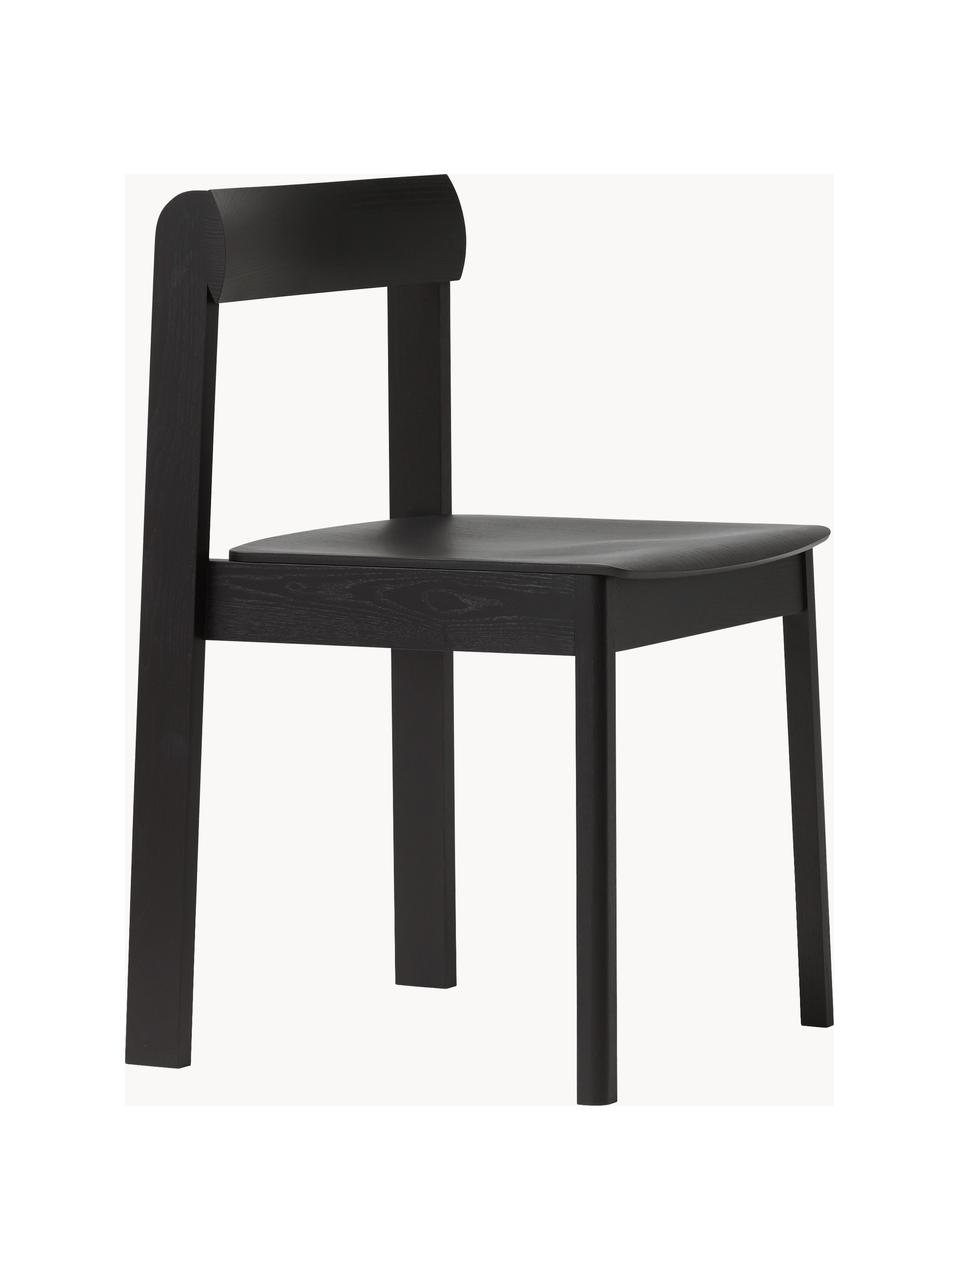 Stapelbare Eichenholz-Stühle Blueprint, 2 Stück, Eichenholz, Eichenholz, schwarz lackiert, B 46 x T 49 cm